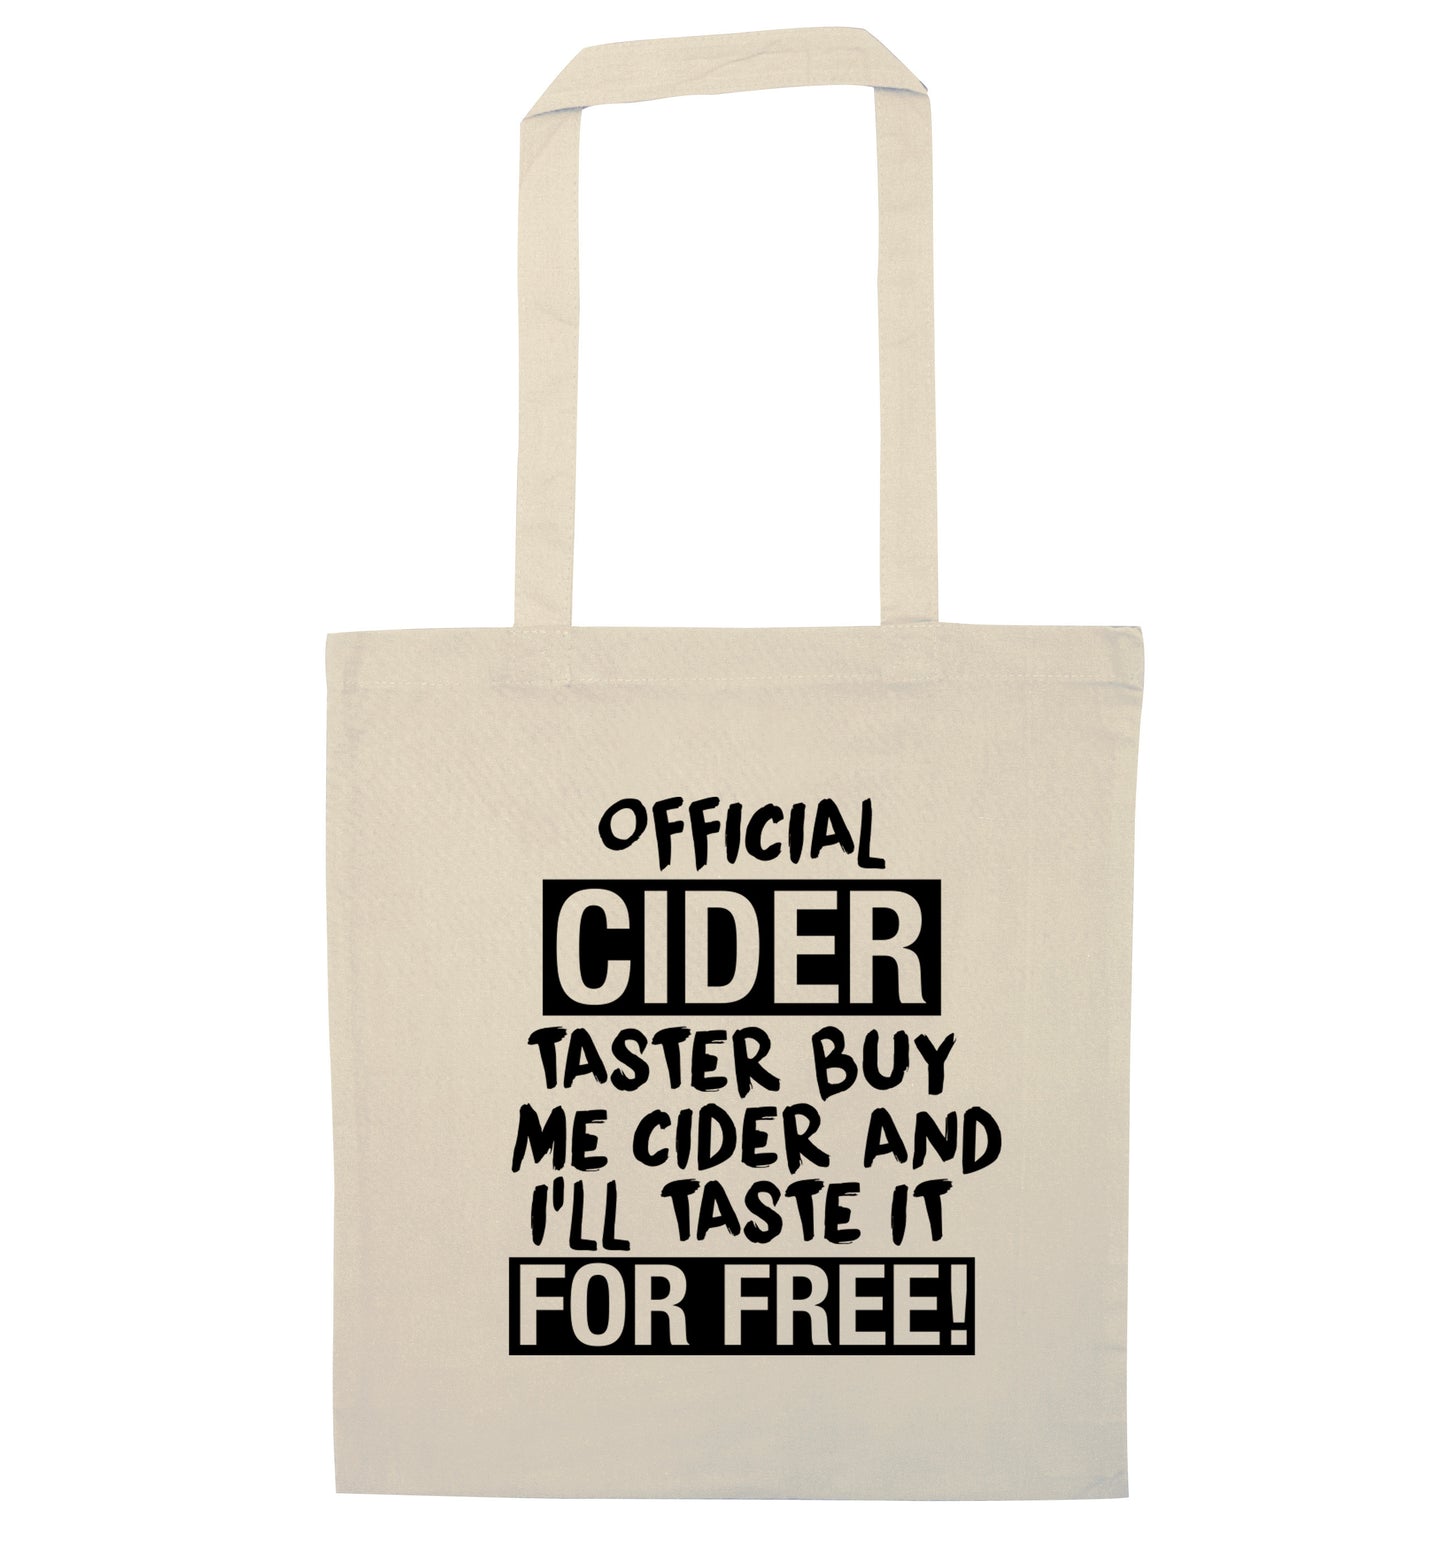 Official cider taster buy me cider and I'll taste it for free! natural tote bag